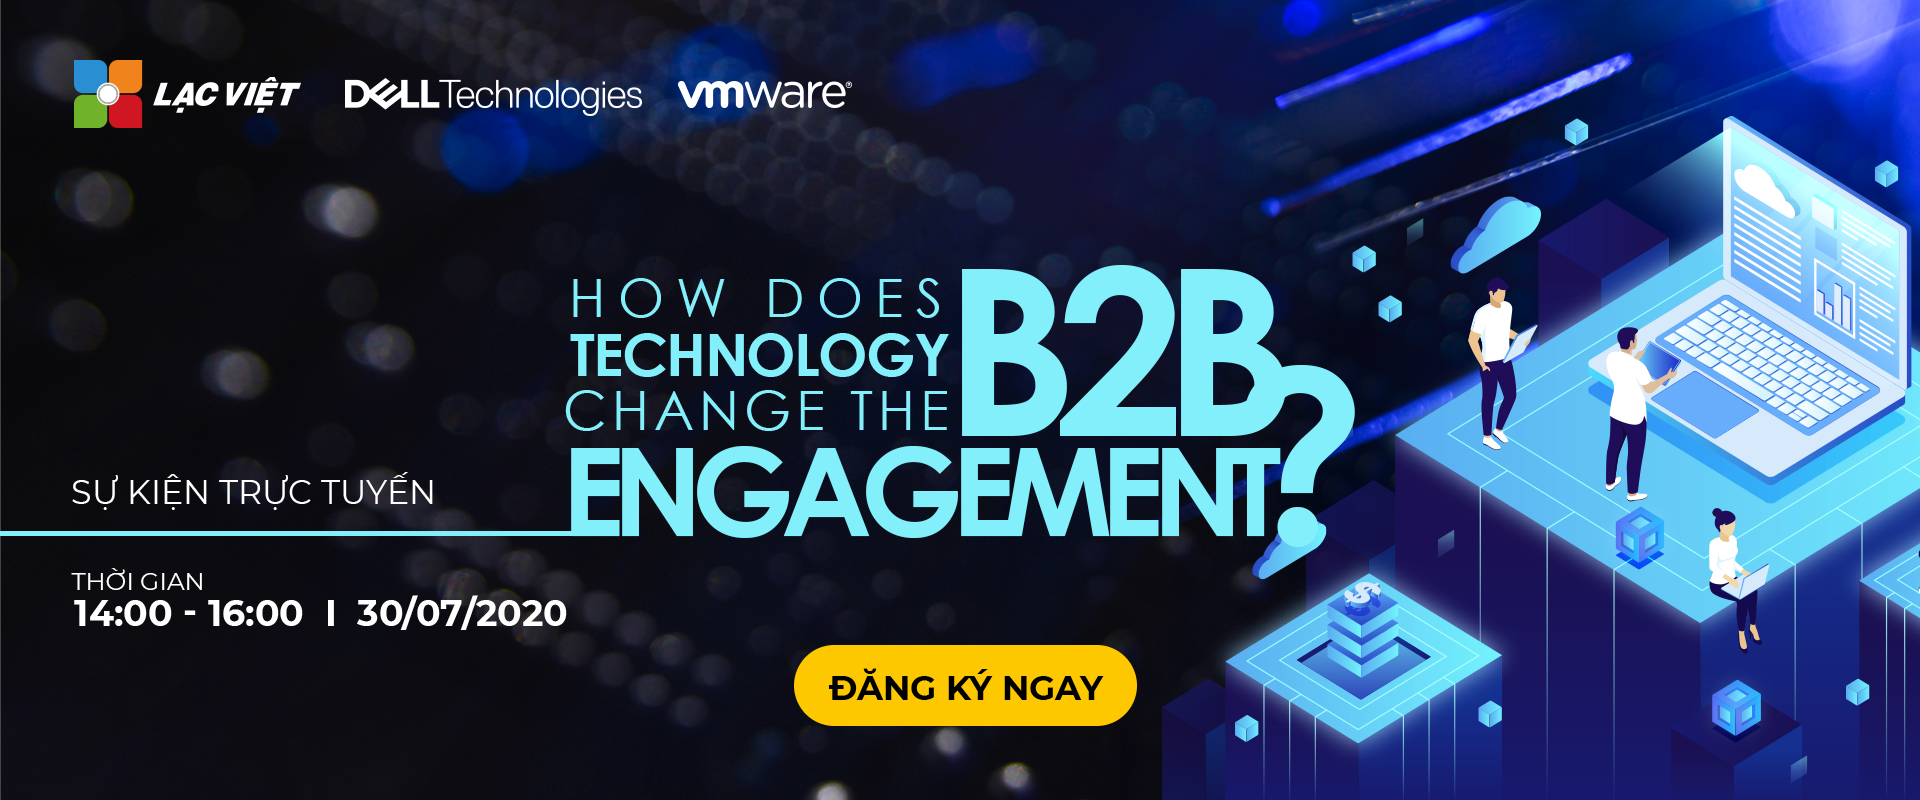 Đăng ký tham gia sự kiện trực tuyến How does technology change the B2B engagement